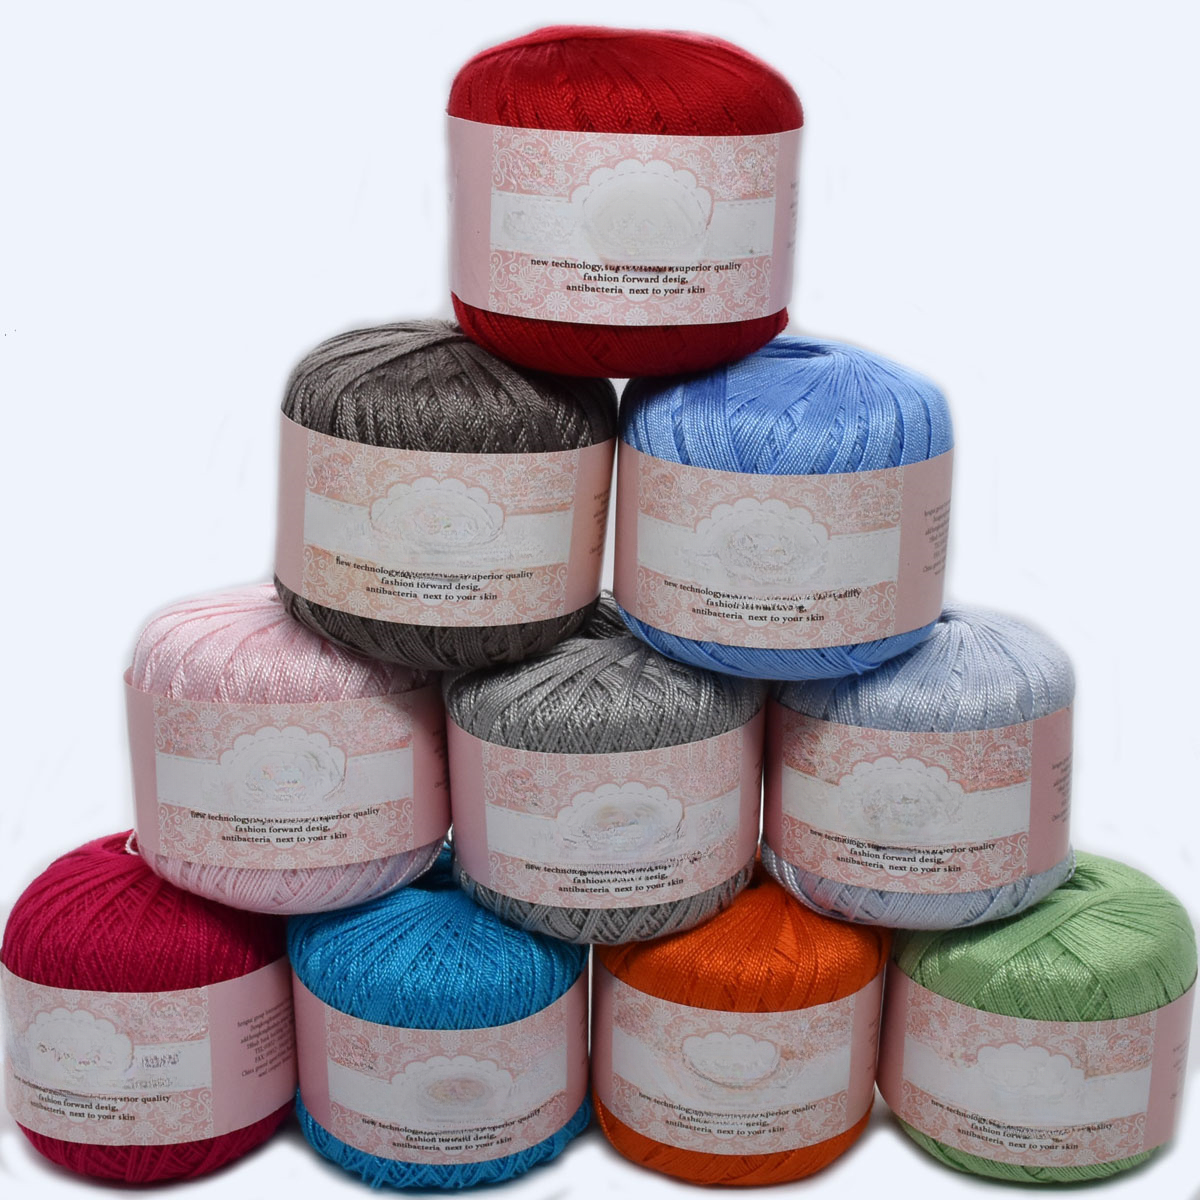 50g Hank 100% Natural Linen DK Weight Hand Knitting Crochet Yarn For Summer  Garments Soft And Cool